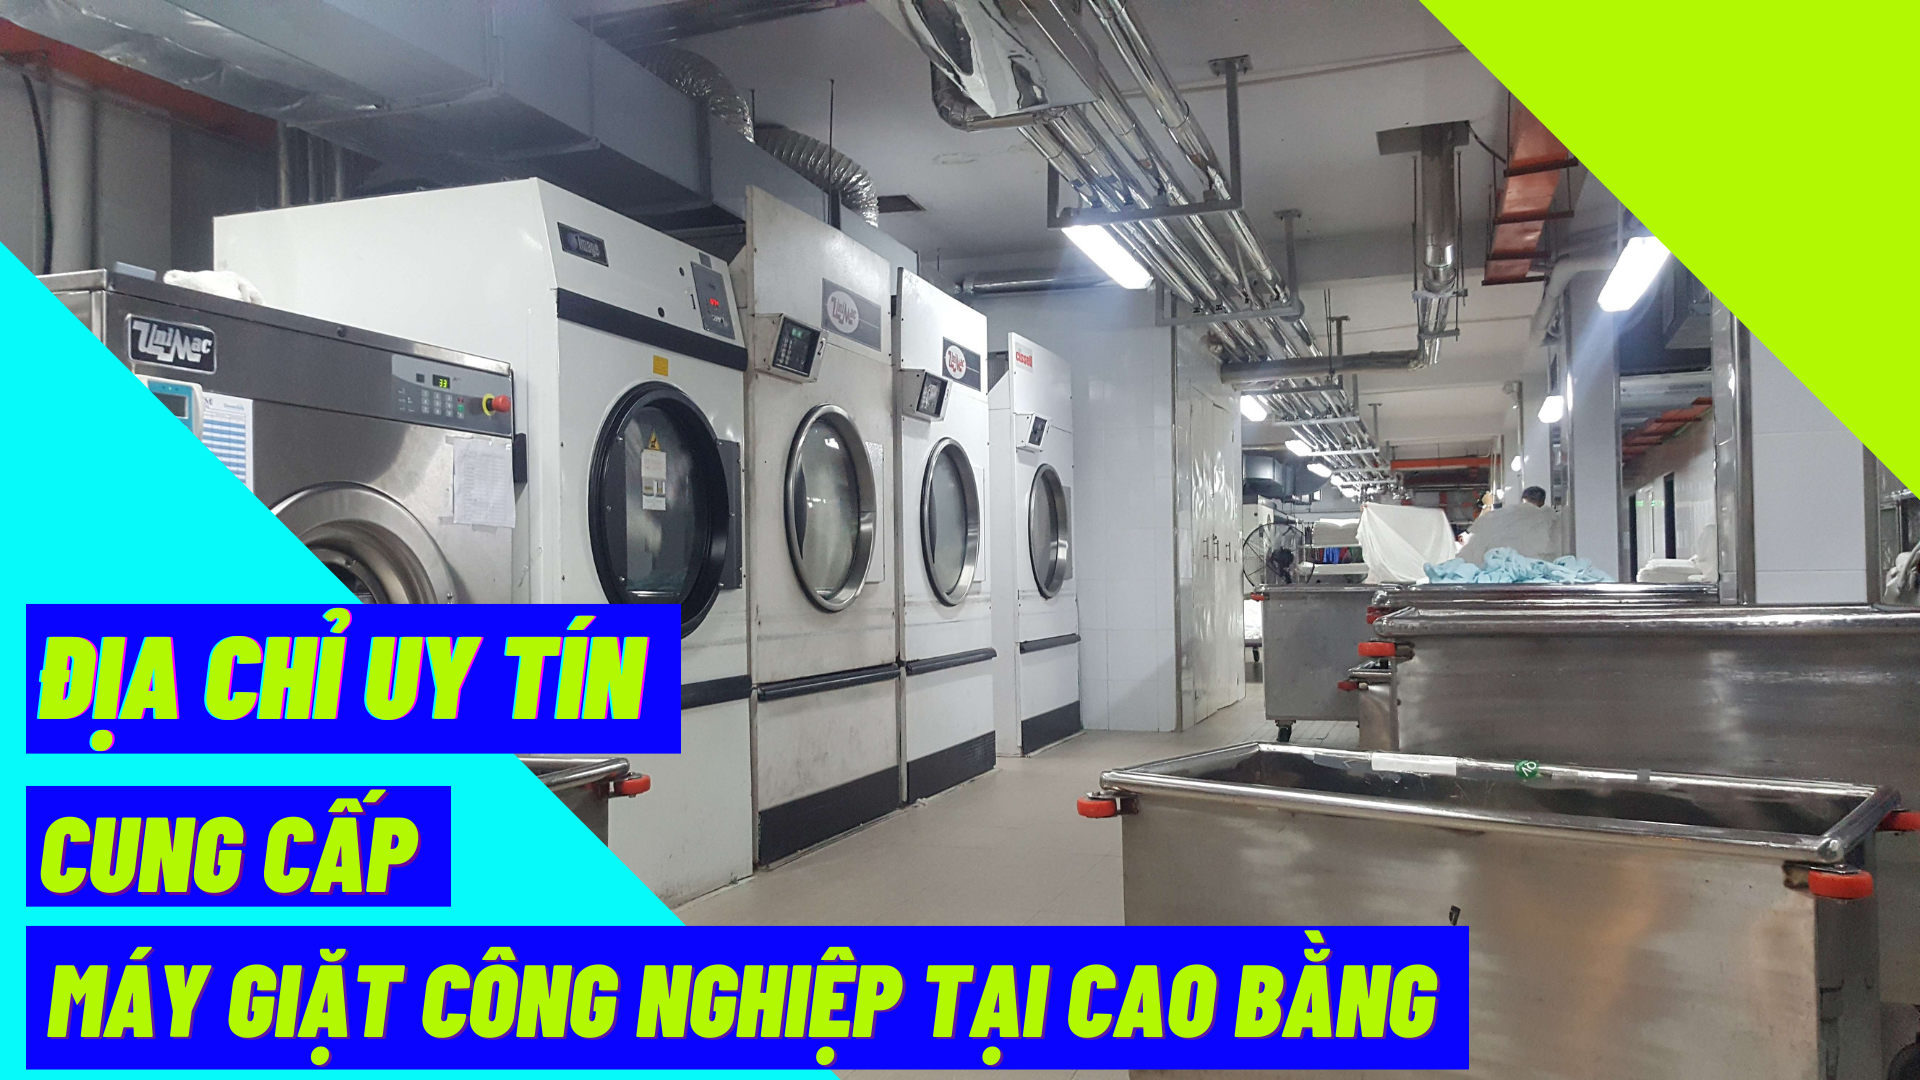 Địa chỉ uy tín cung cấp máy giặt công nghiệp tại Cao Bằng